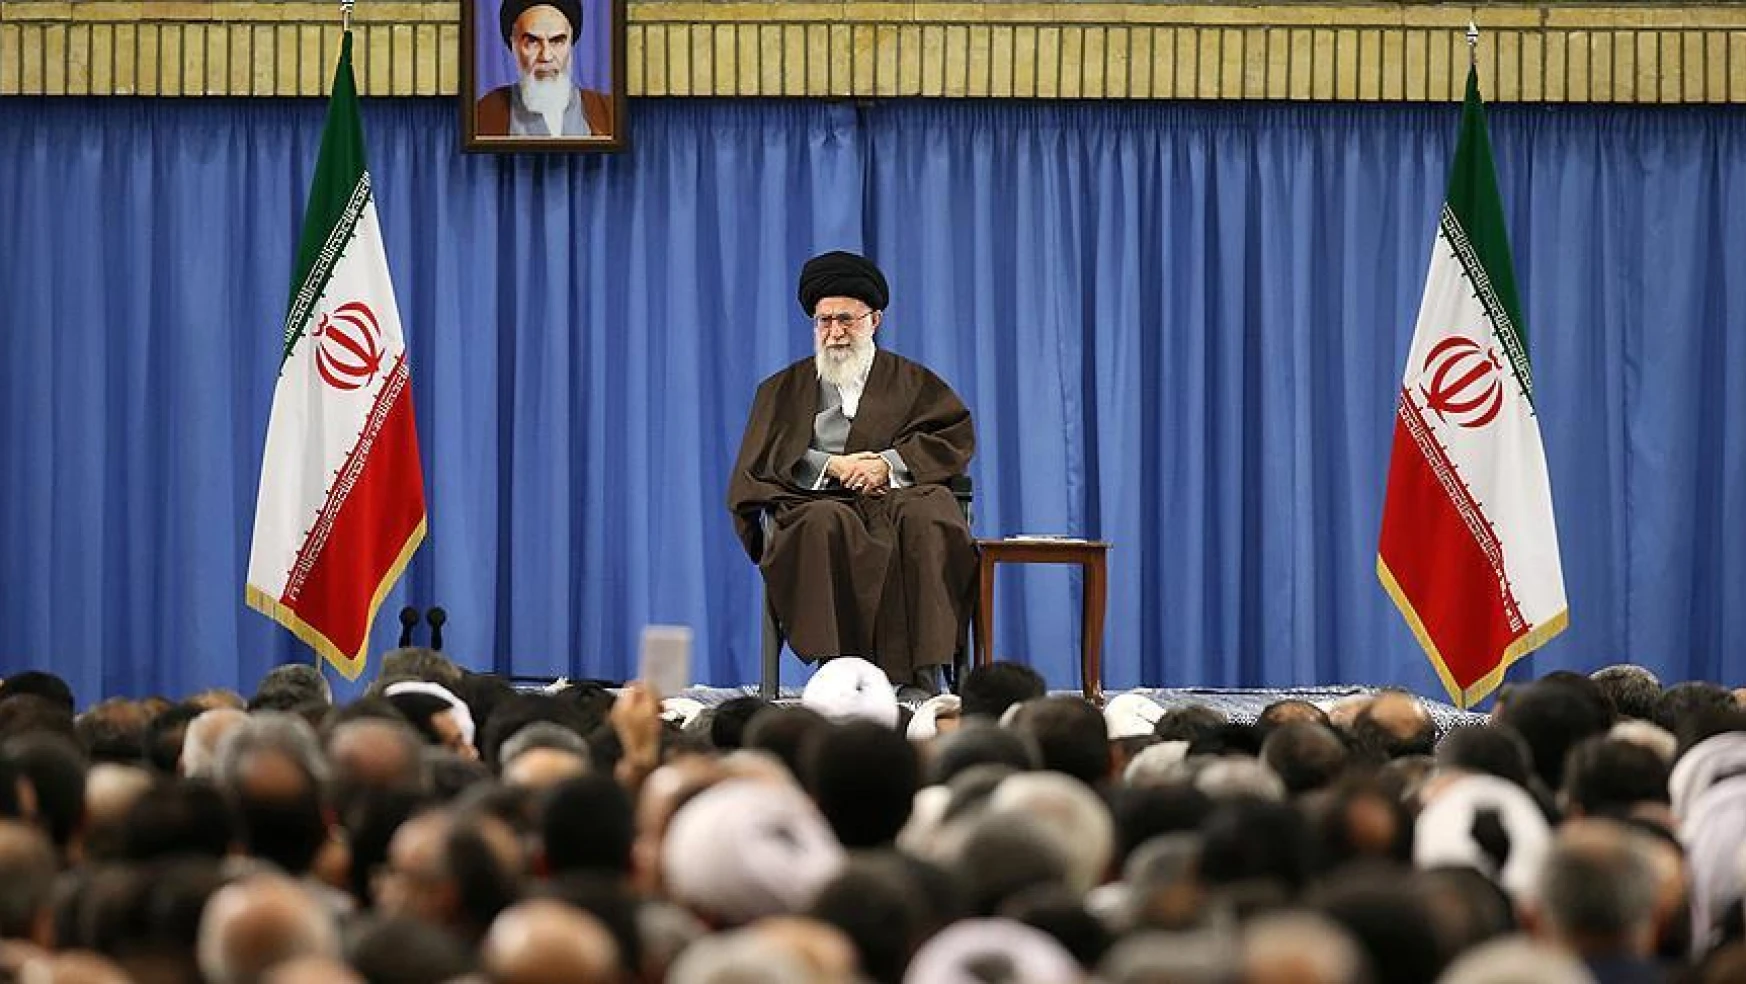 İran'daki seçim tartışmaları sürüyor